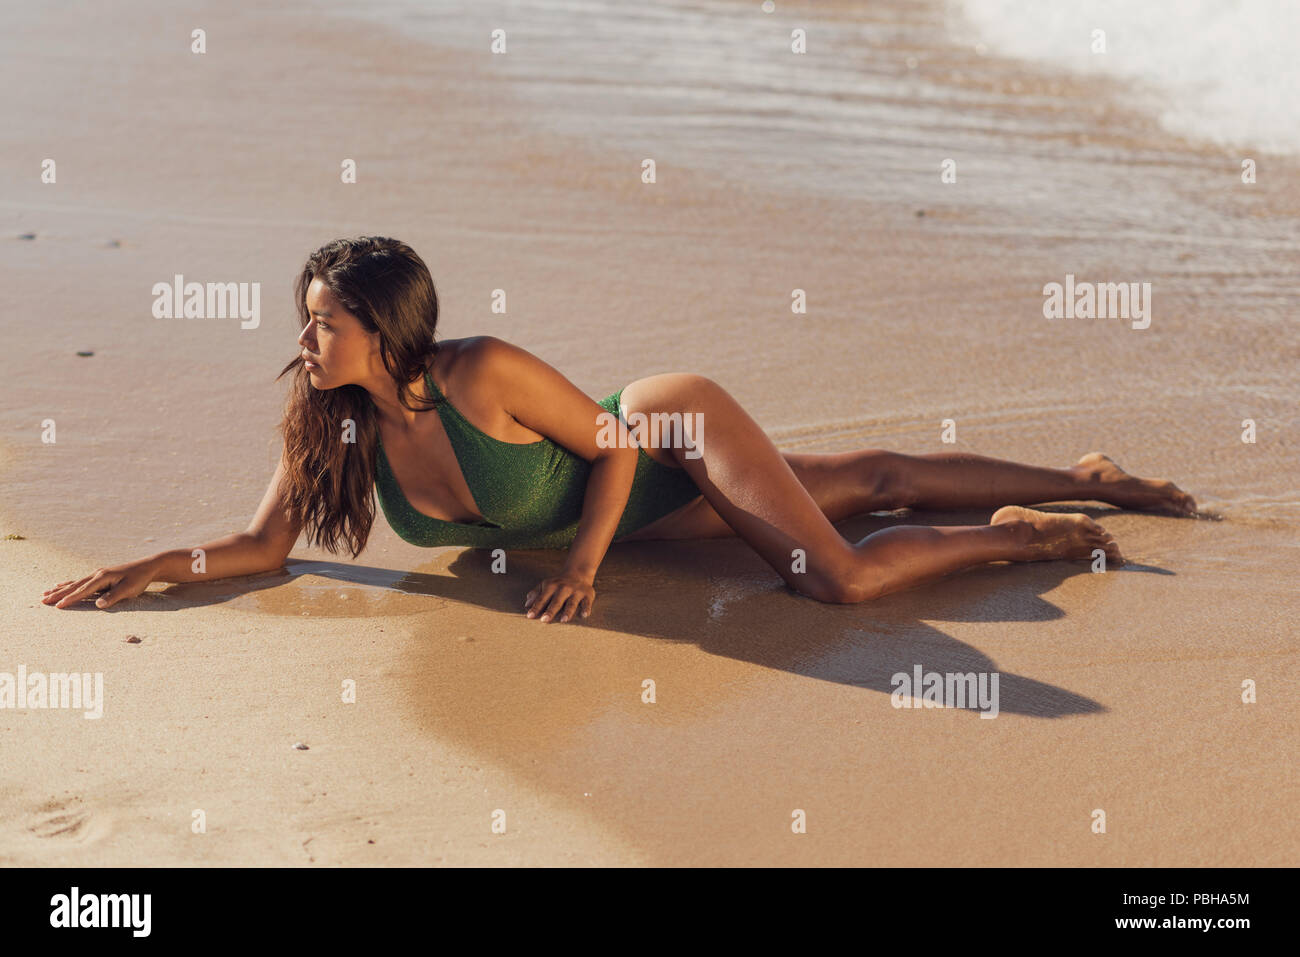 Exotic woman in a swimsuit. Tarifa, Costa de la Luz, Cadiz, Andalusia, Spain. Stock Photo